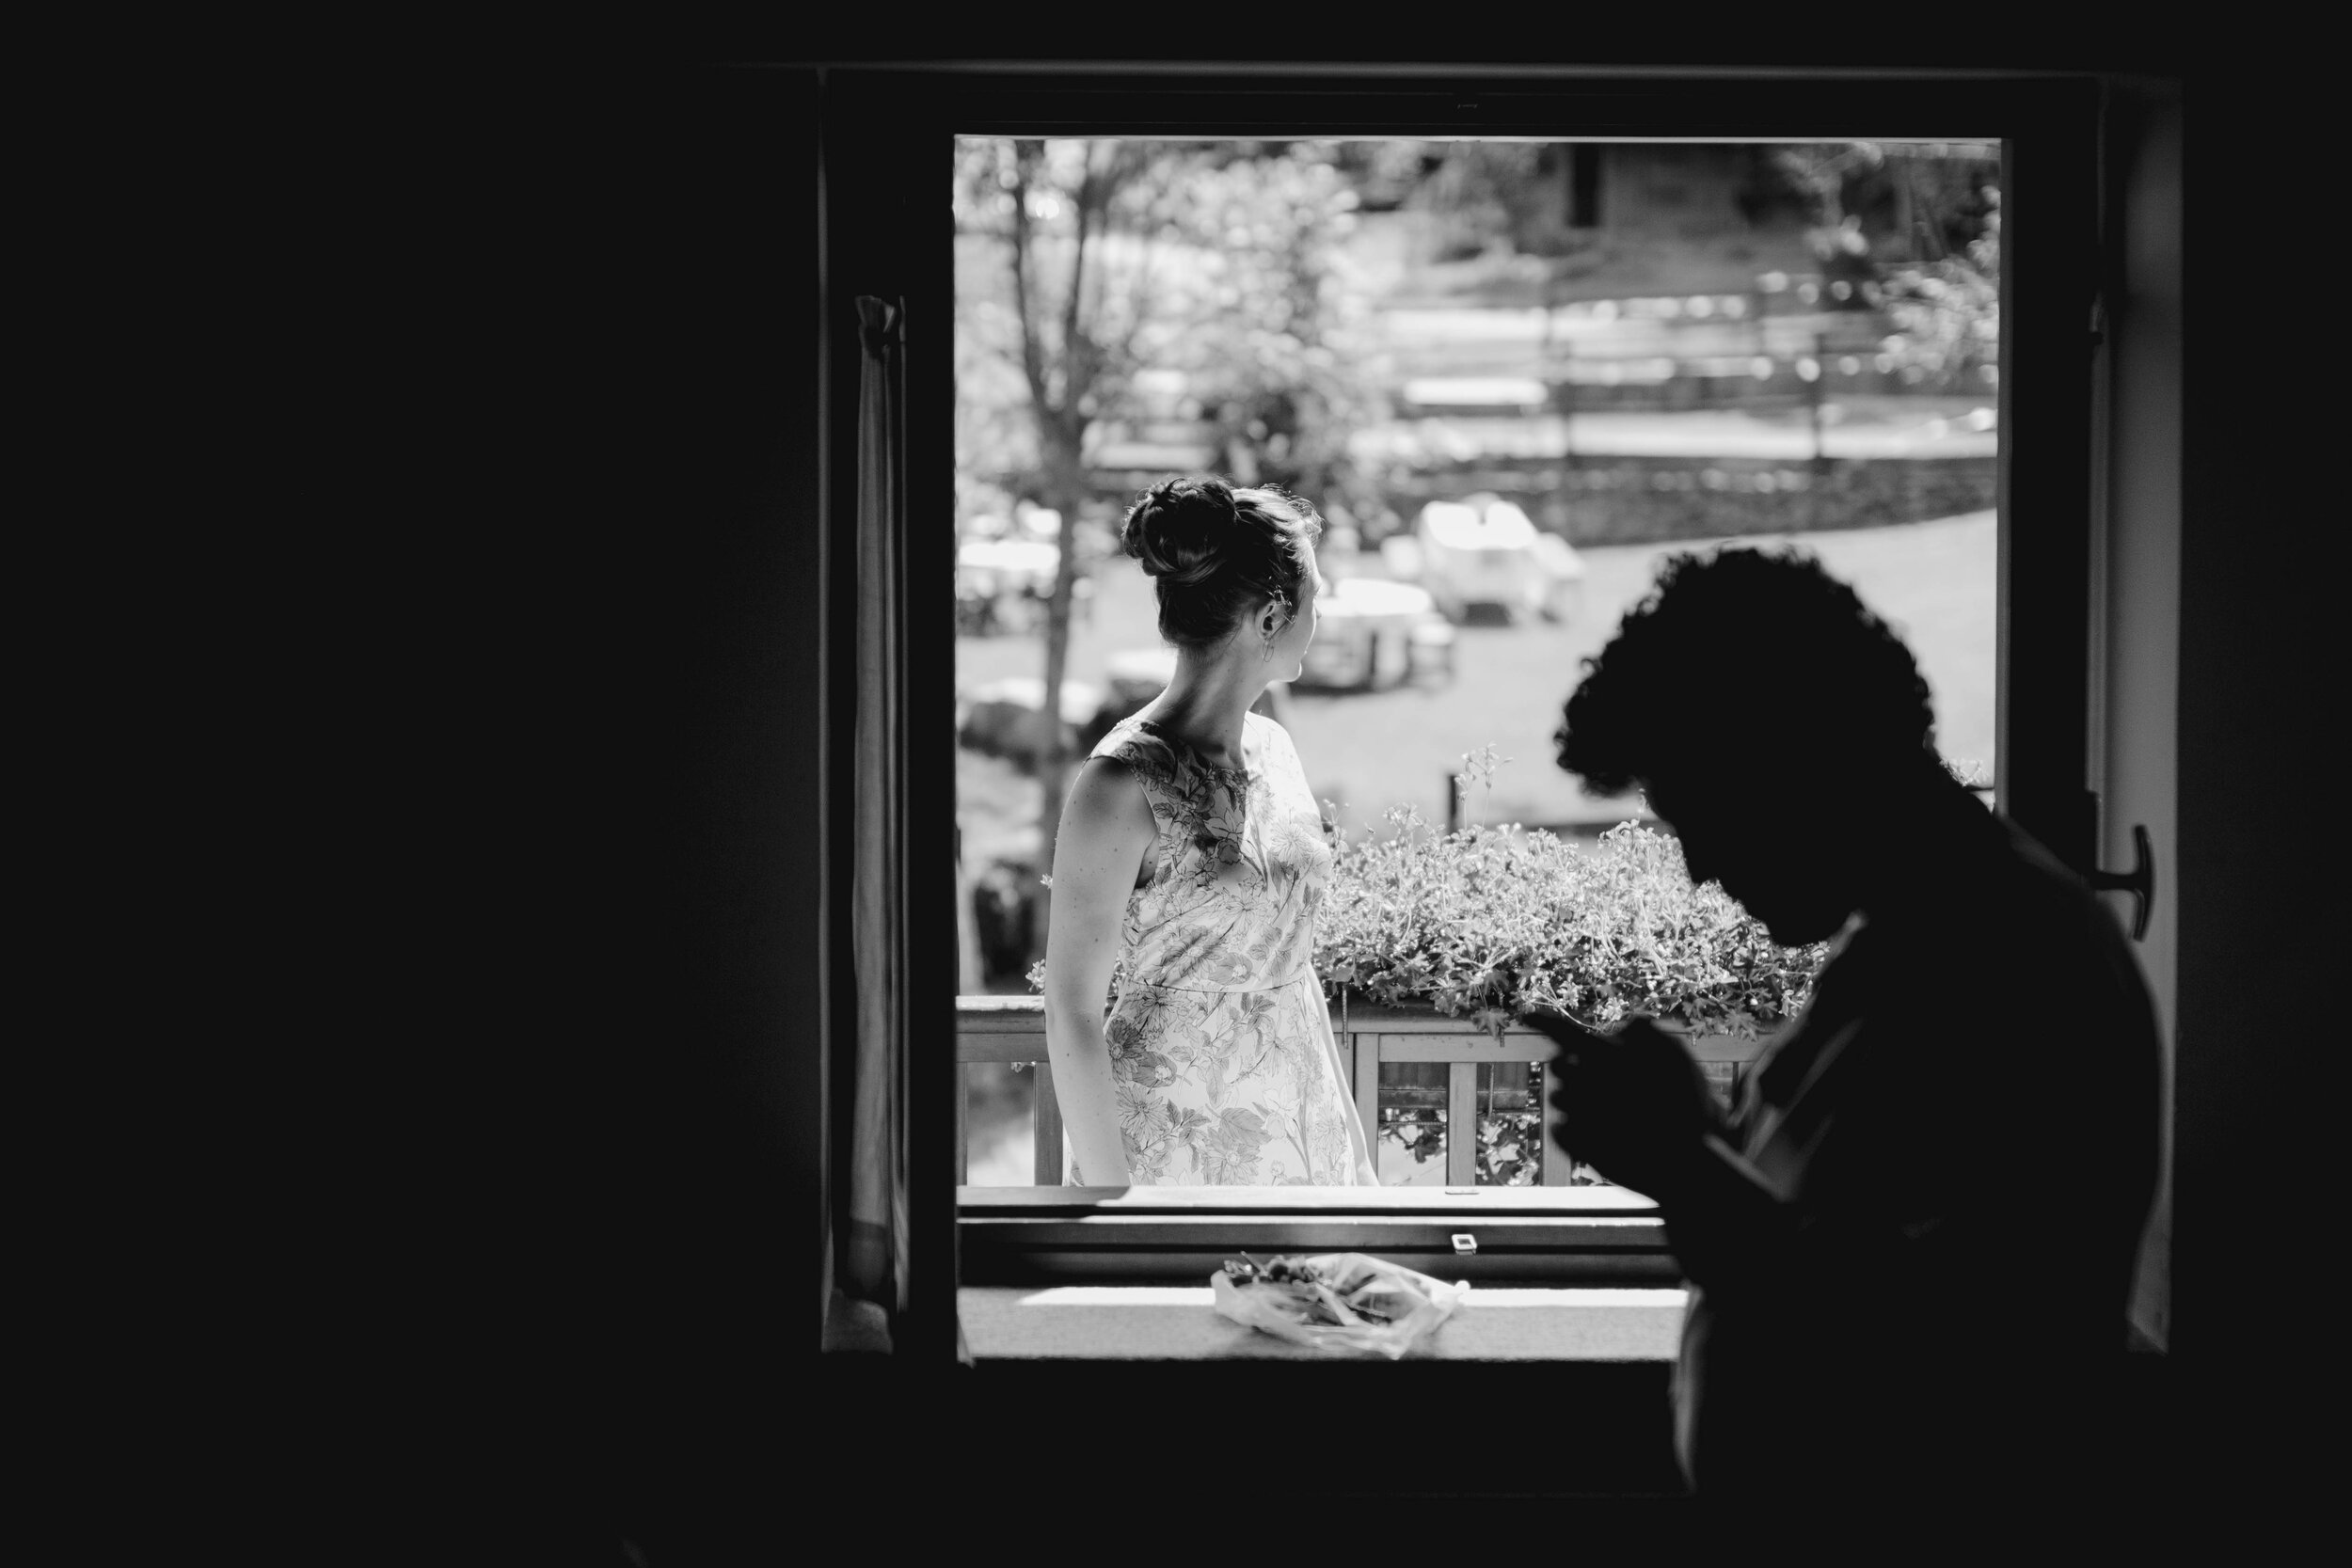 017 - Matrimonio in Val di Susa - Miriam Callegari Fotografa.JPG